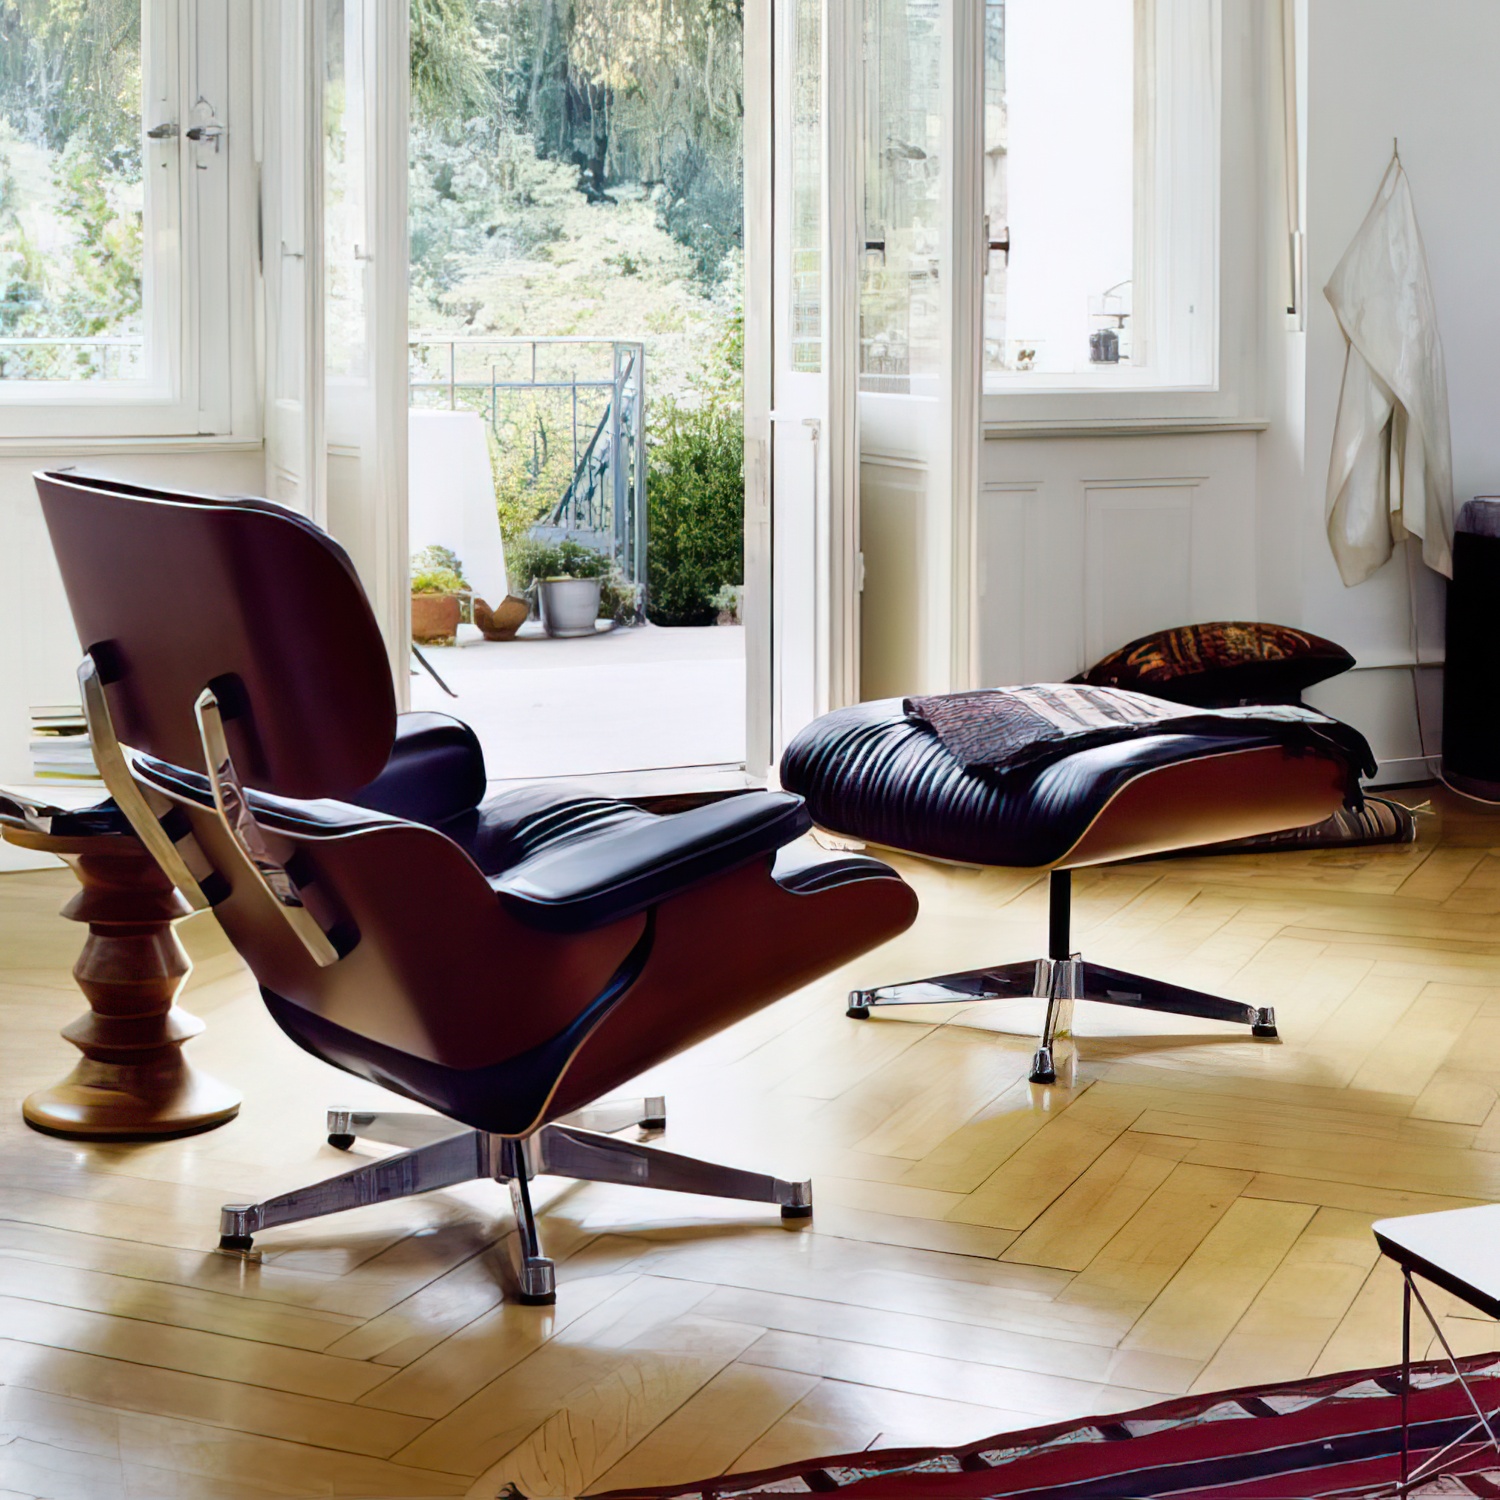 Lounge Chair und Ottoman 41212500 Nussbaumschale Gestell schwarz Leder in Nero